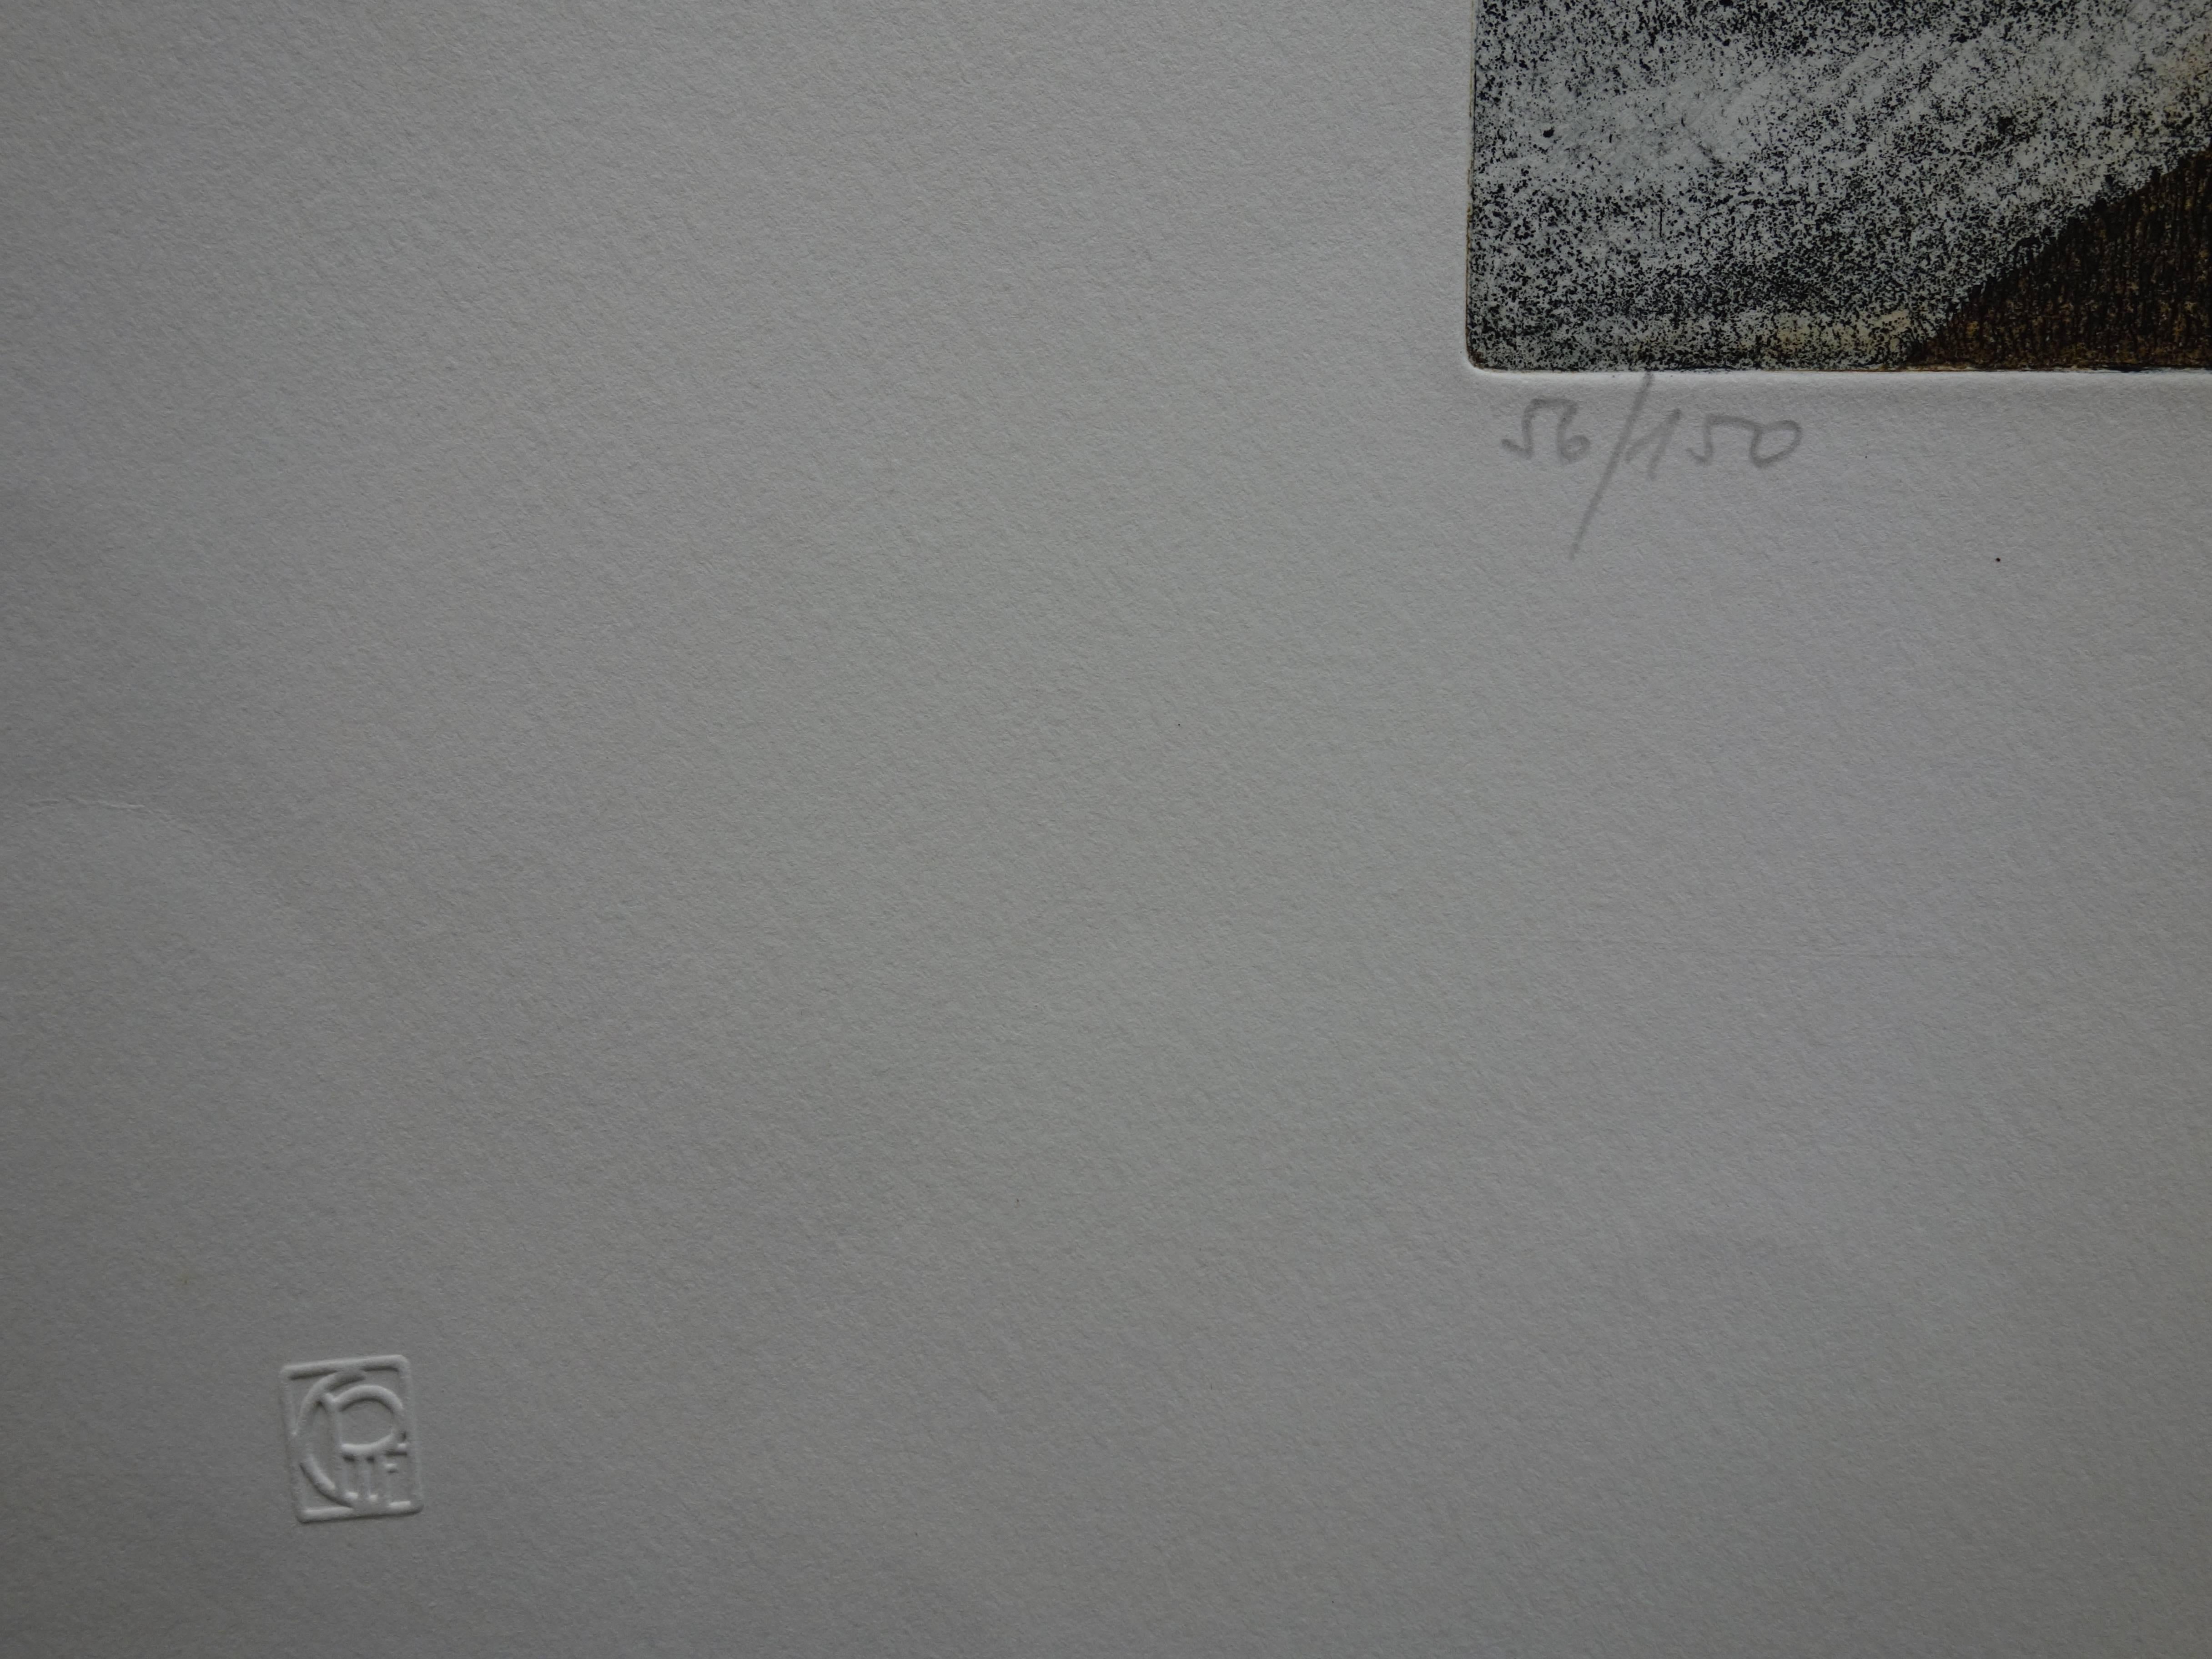 Lars BO
L'autre côté du mur

Gravure originale avec aquatinte
Hnadsigné au crayon
Numéroté / 150 ex
Sur vélin 50 x 65 cm (c. 20 x 26 inch)

Très bon état, marge droite légèrement plissée (voir photos)